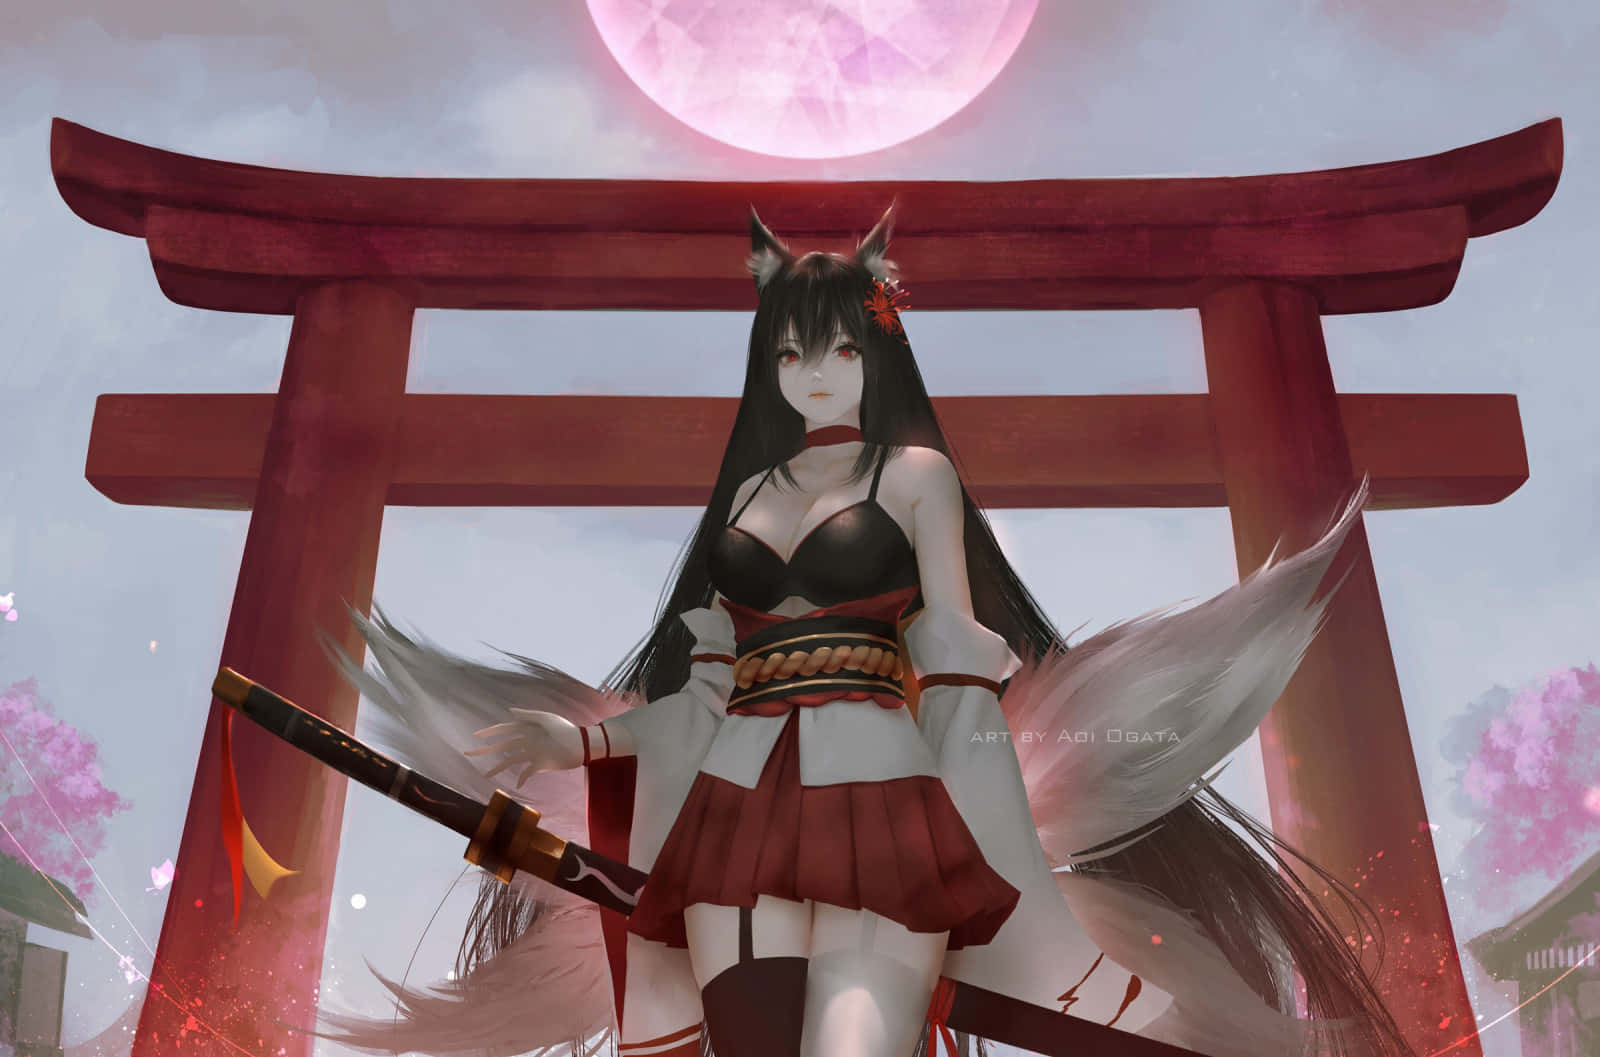 Mystical Fox Girlat Torii Gate Wallpaper